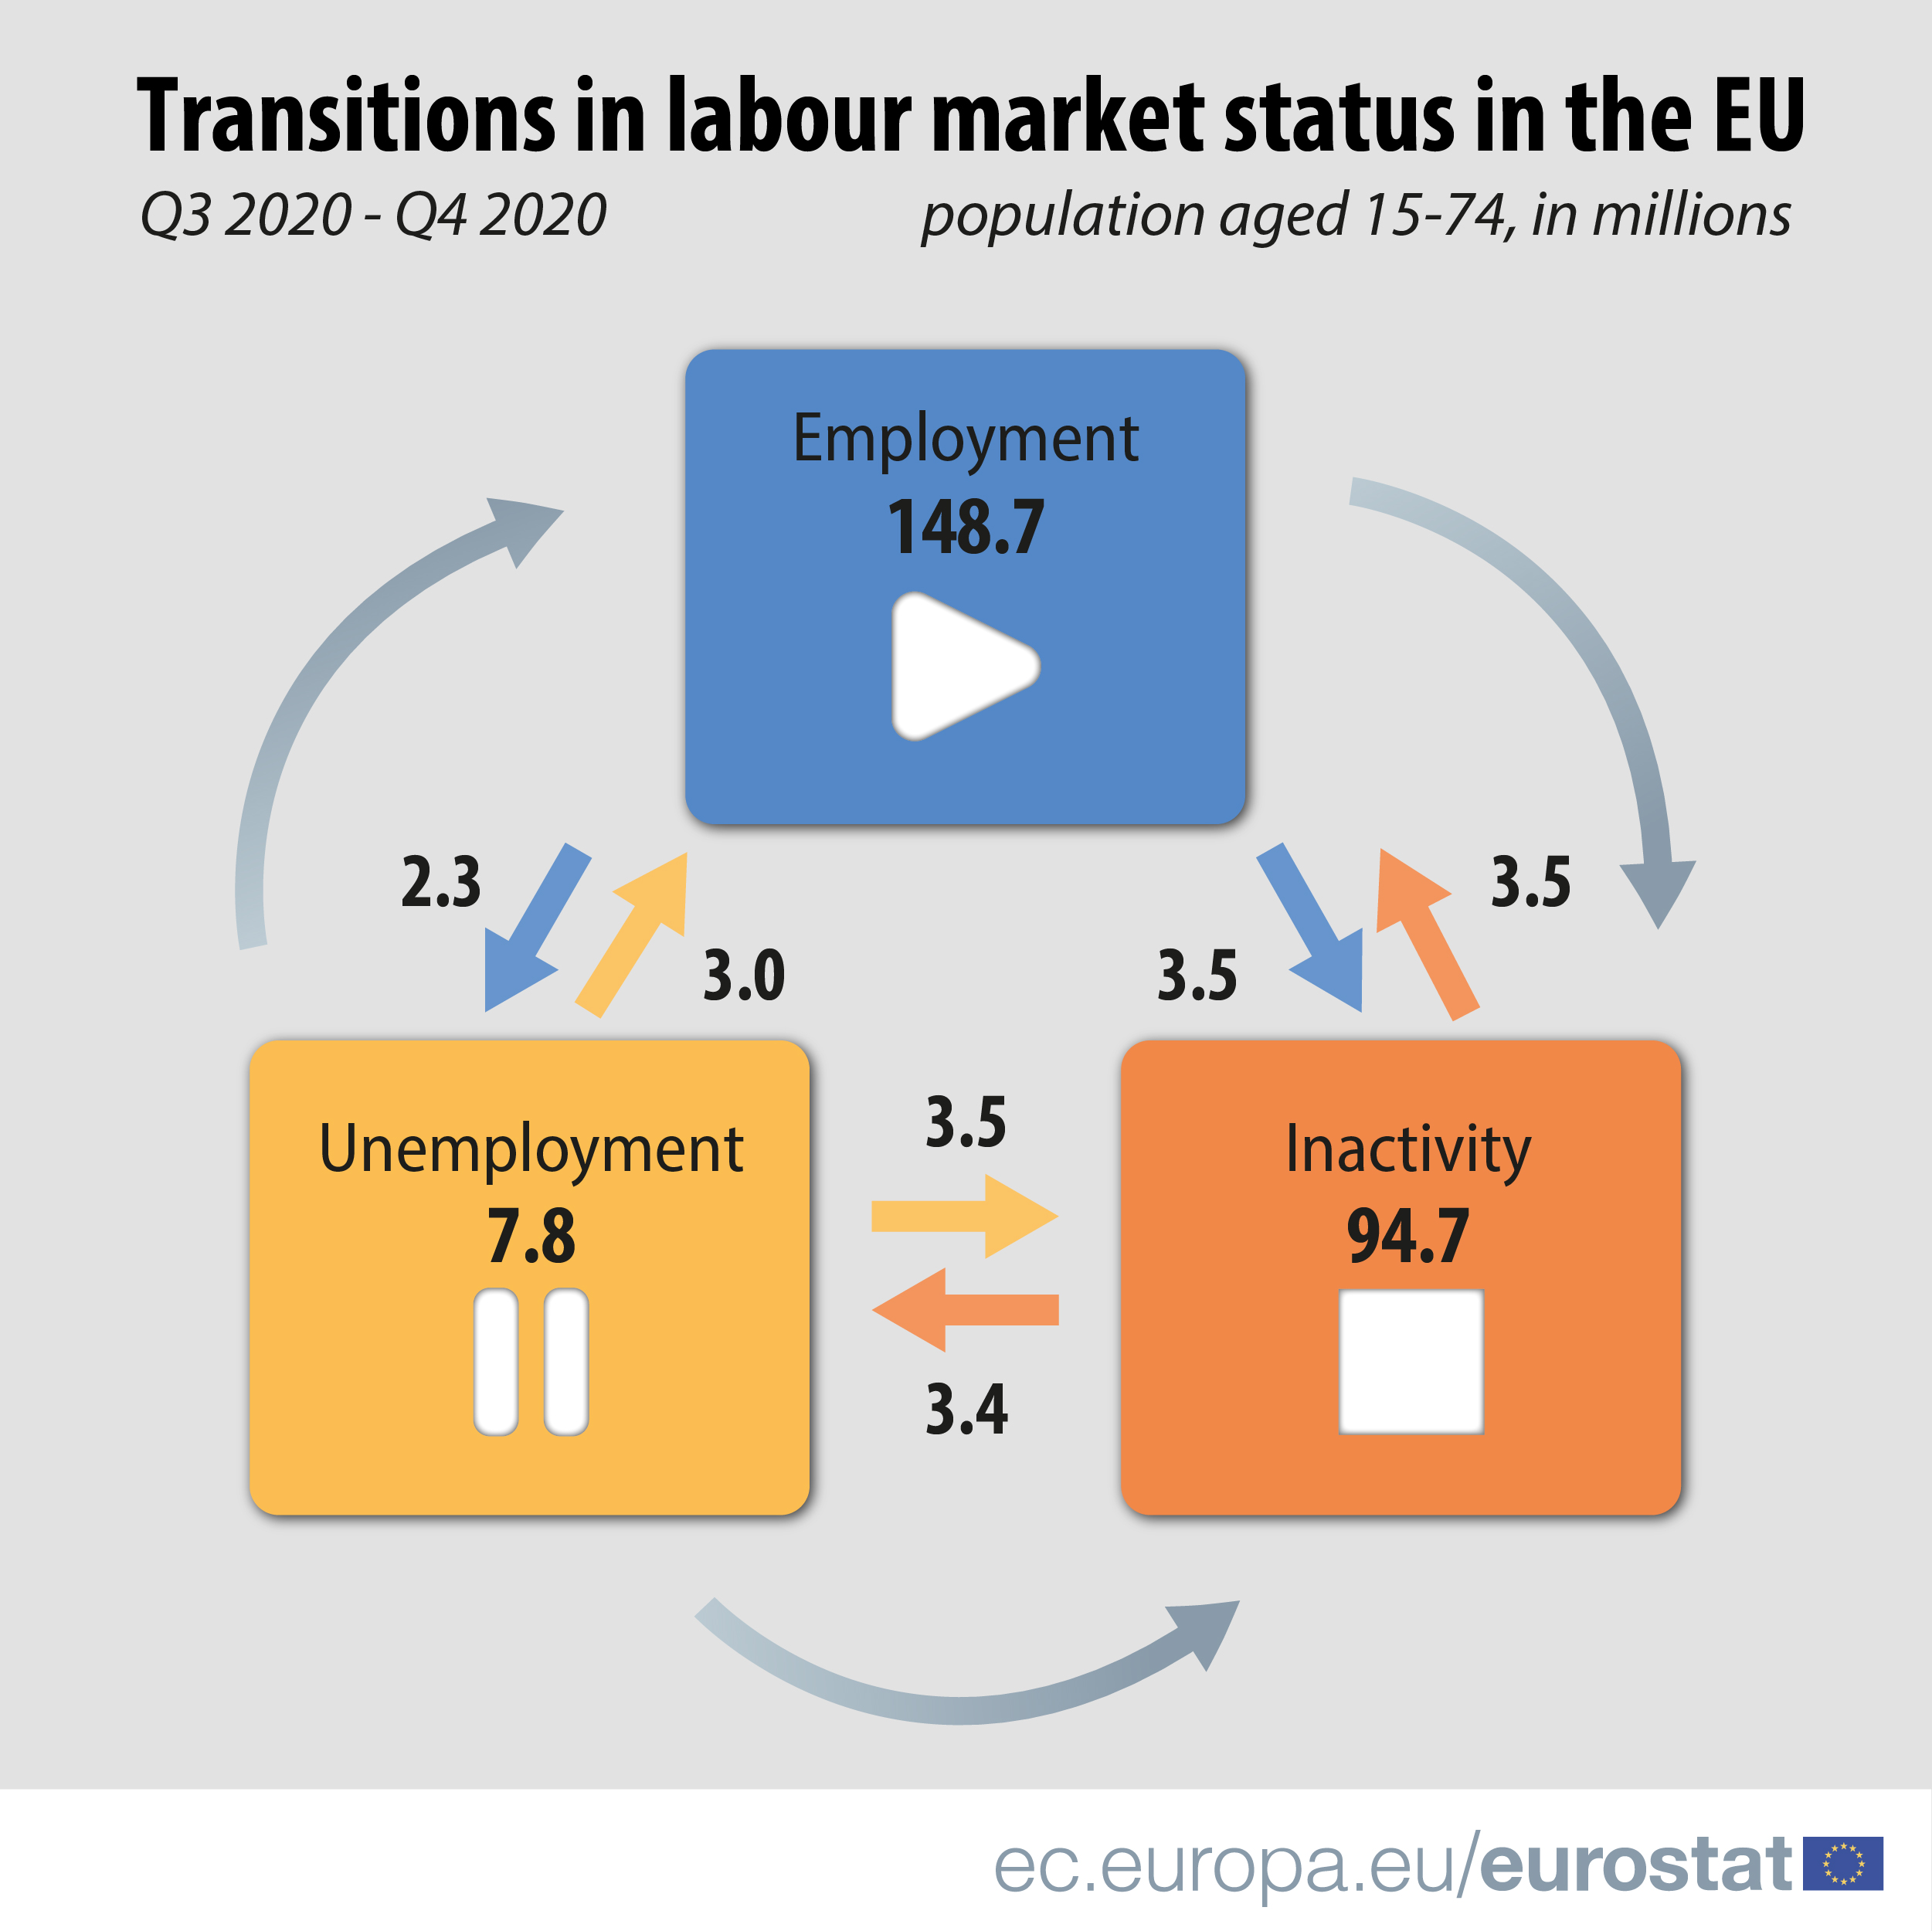 EU Labour market flows in Q4 2020 (Photo: ec.europa.eu/eurostat)